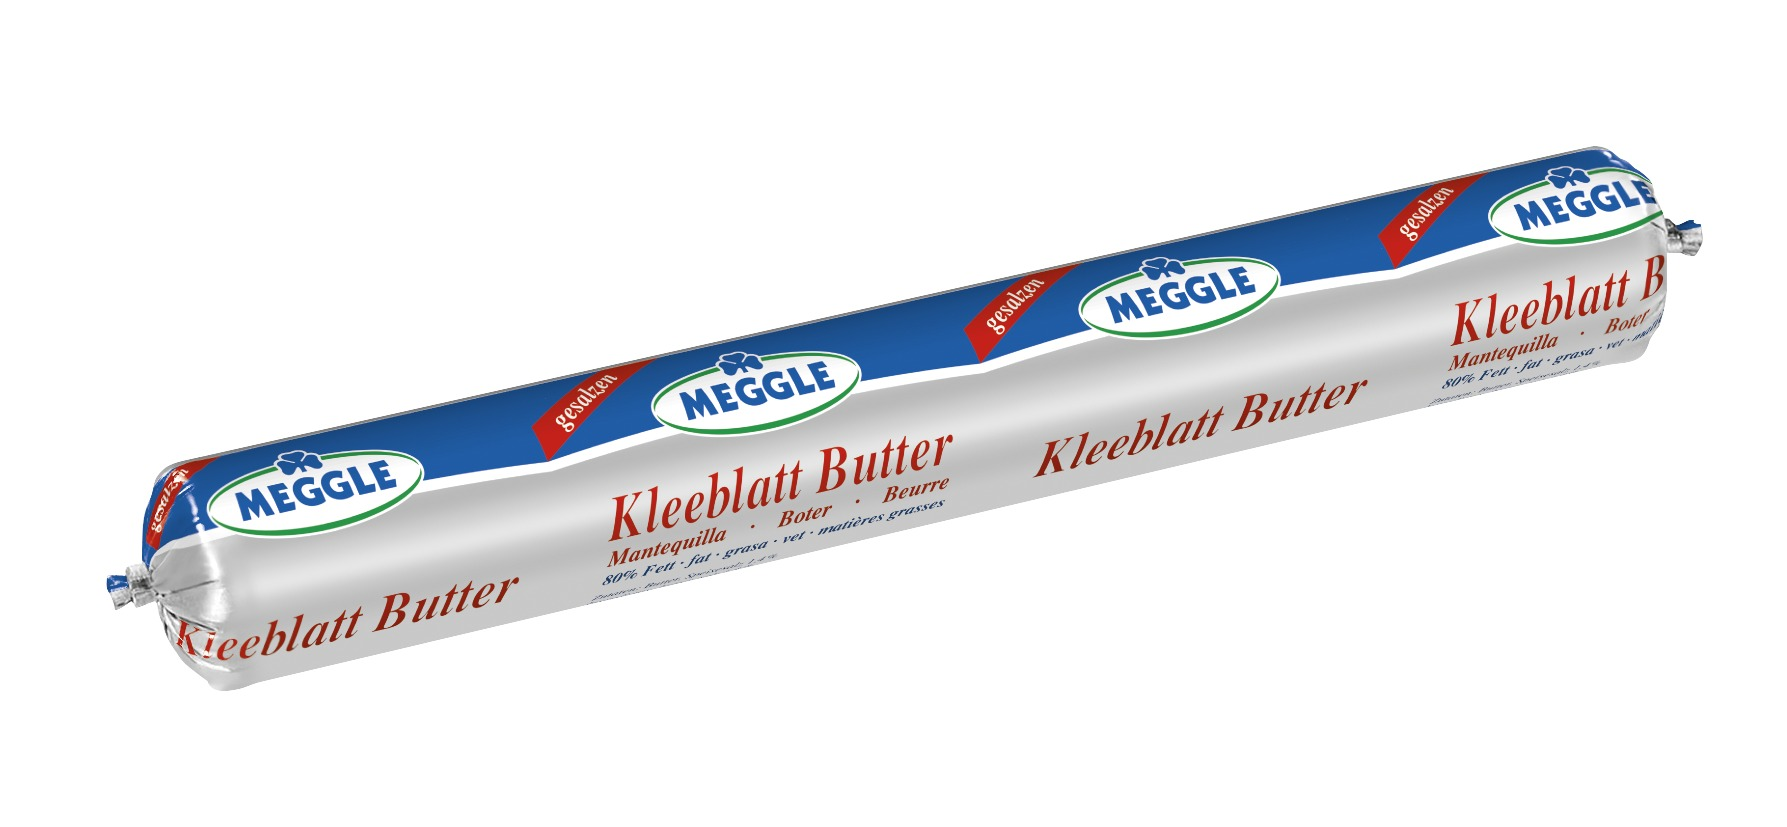 Meggle_Foodservice_Kleeblatt_Butter_gesalzen_250g_470x280